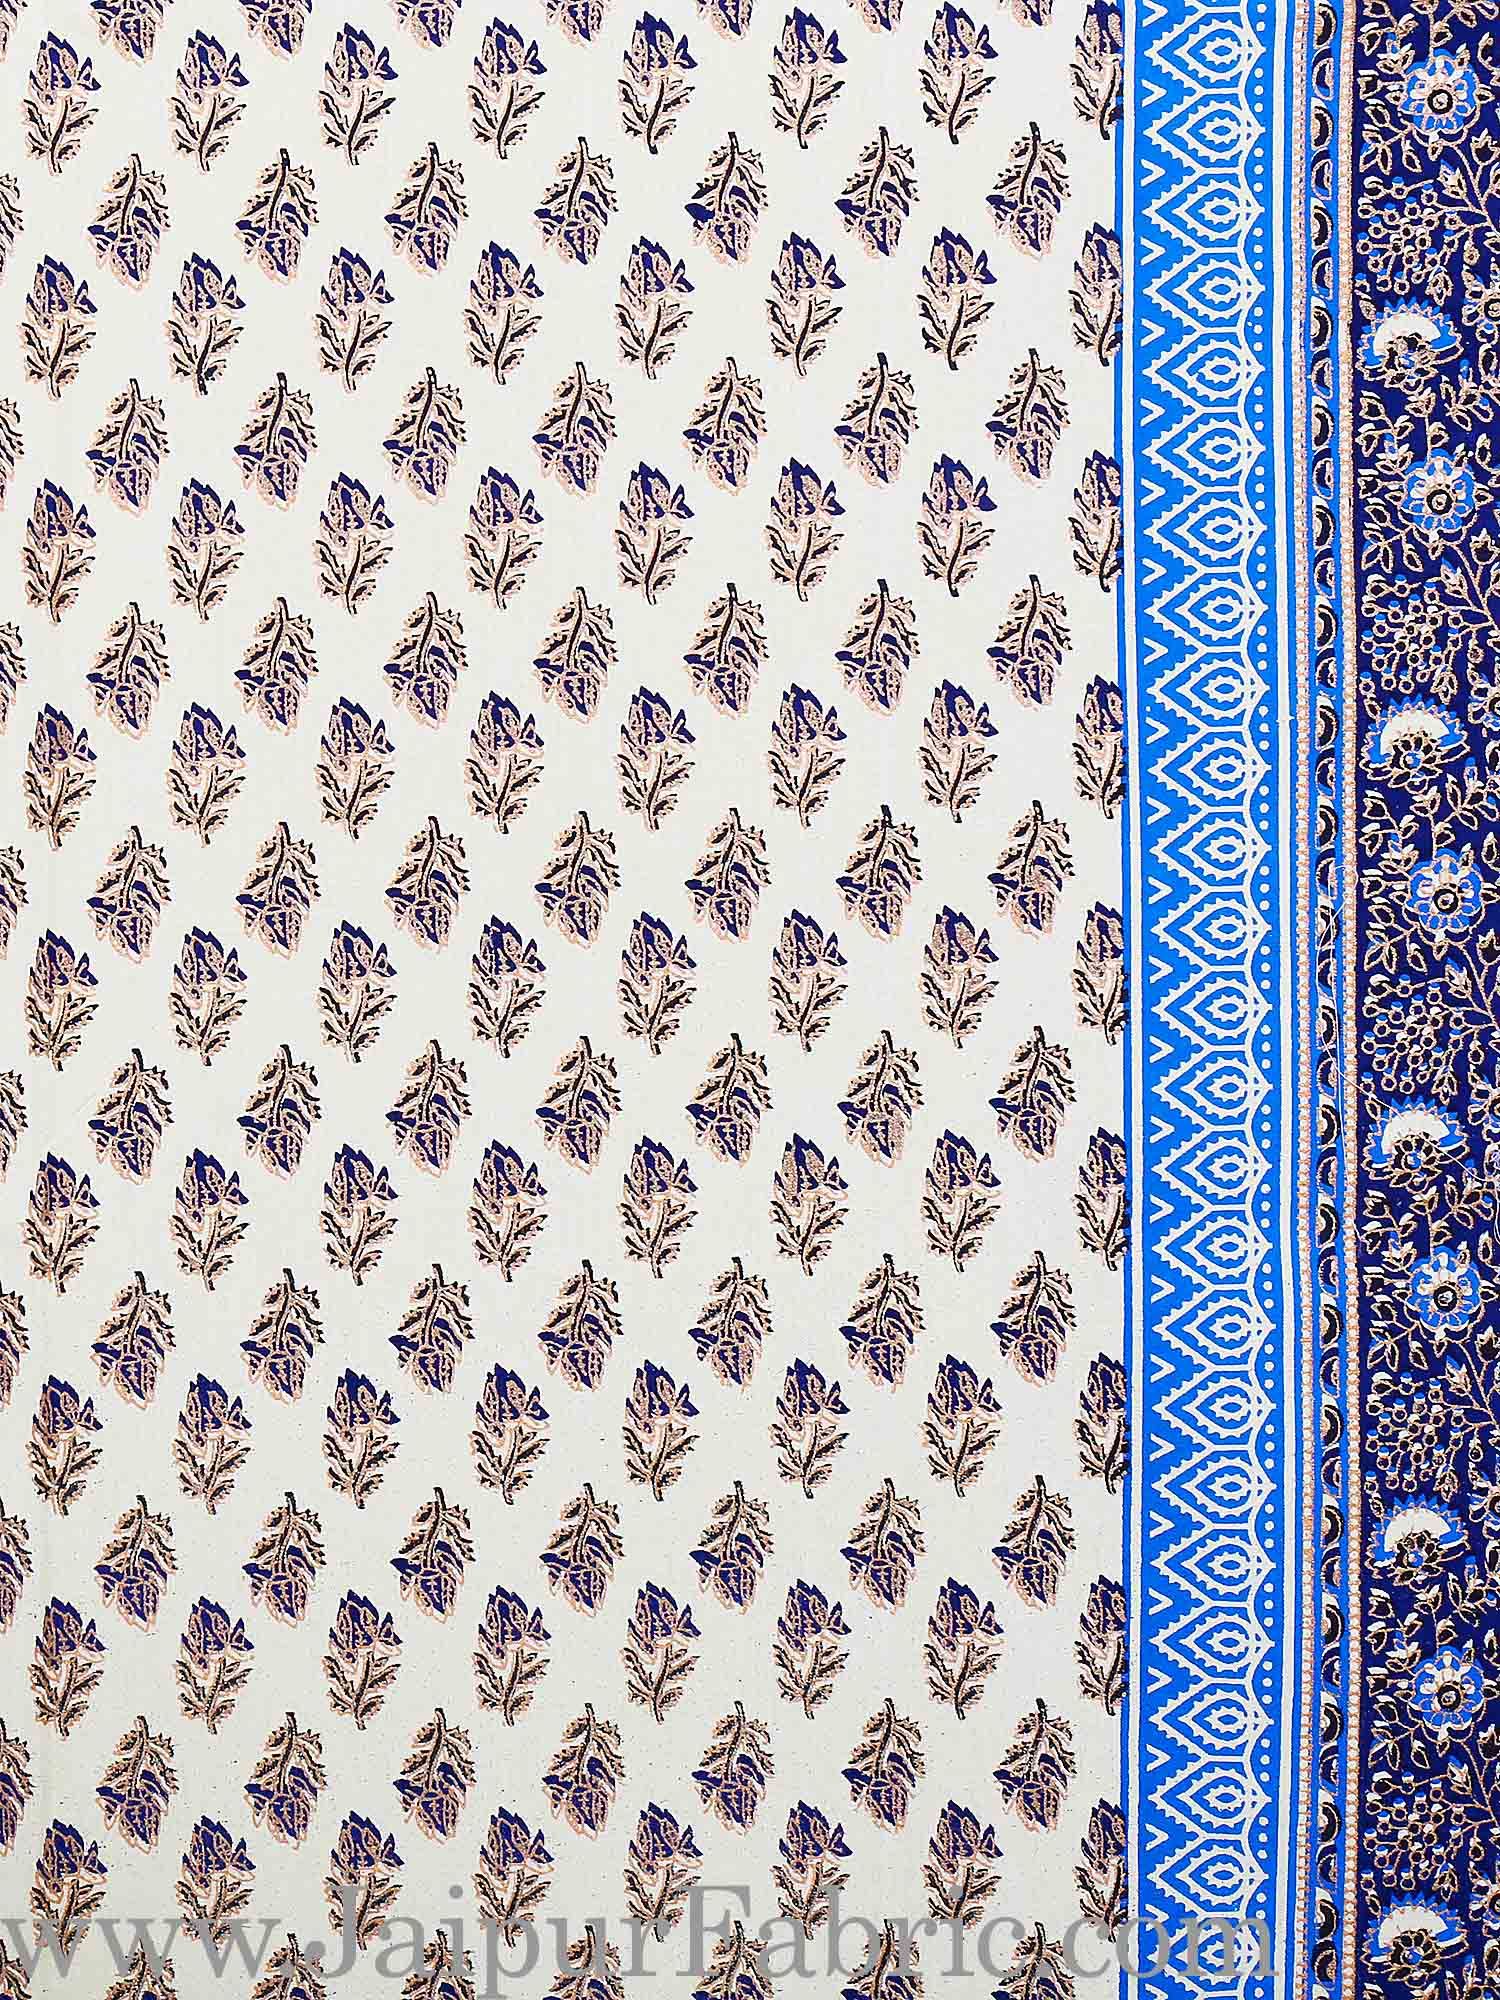 Blue Border Cream Base Golden Floral Print Super Fine Cotton Voile(Mulmul) Cotton Double Bedsheet